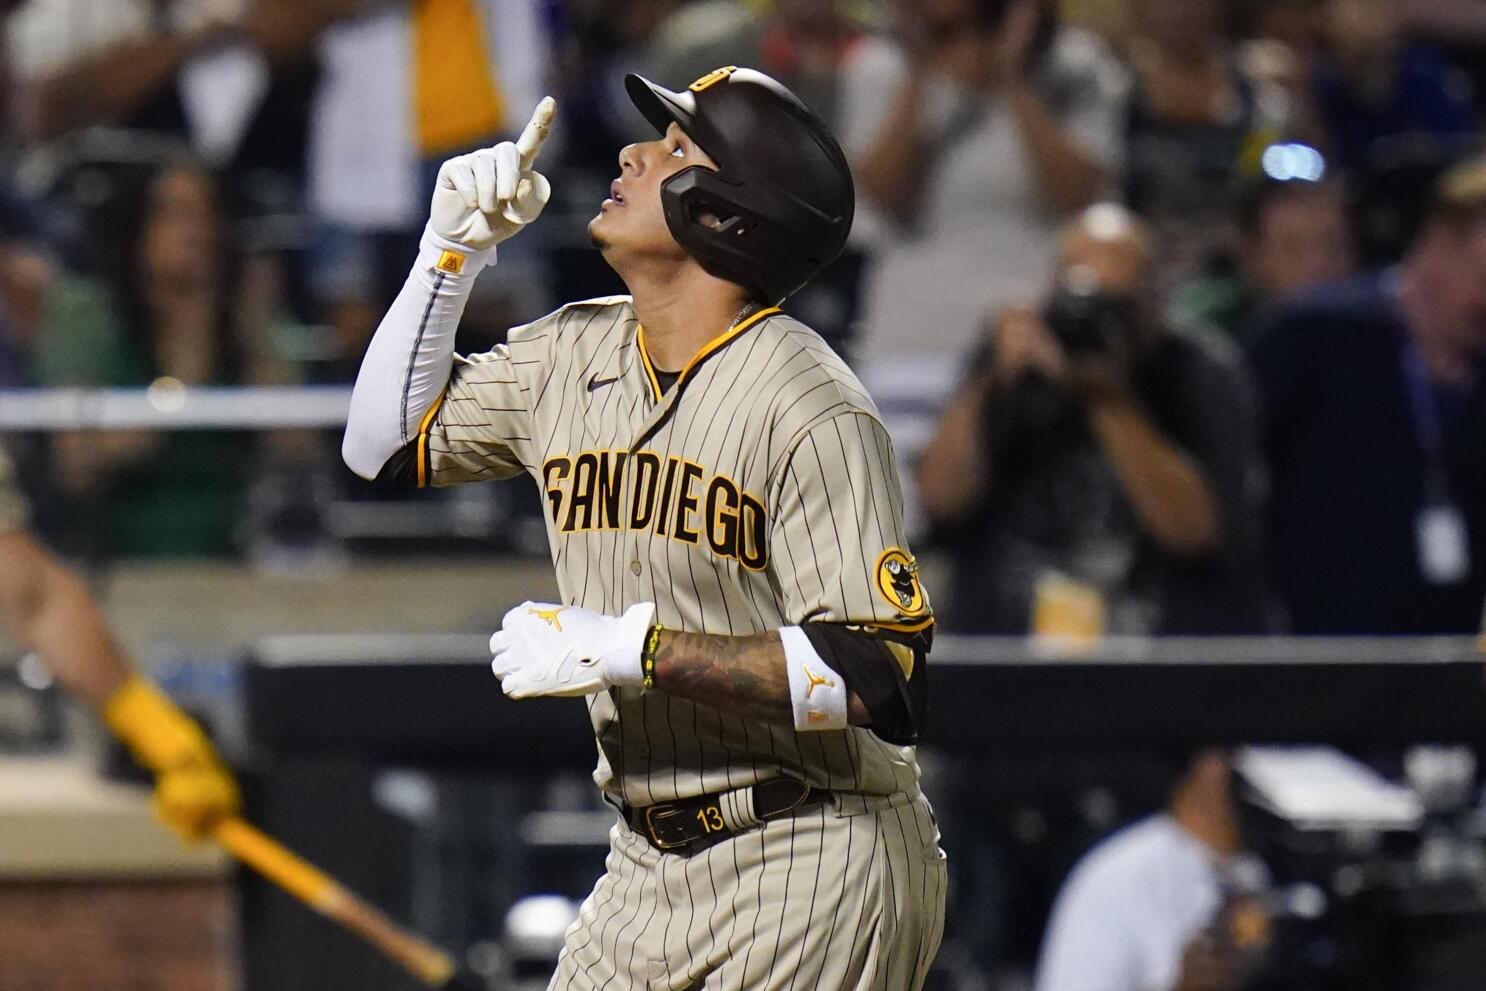 Padres' Kim Ha-seong collects 1st MLB hit, RBI - The Korea Times